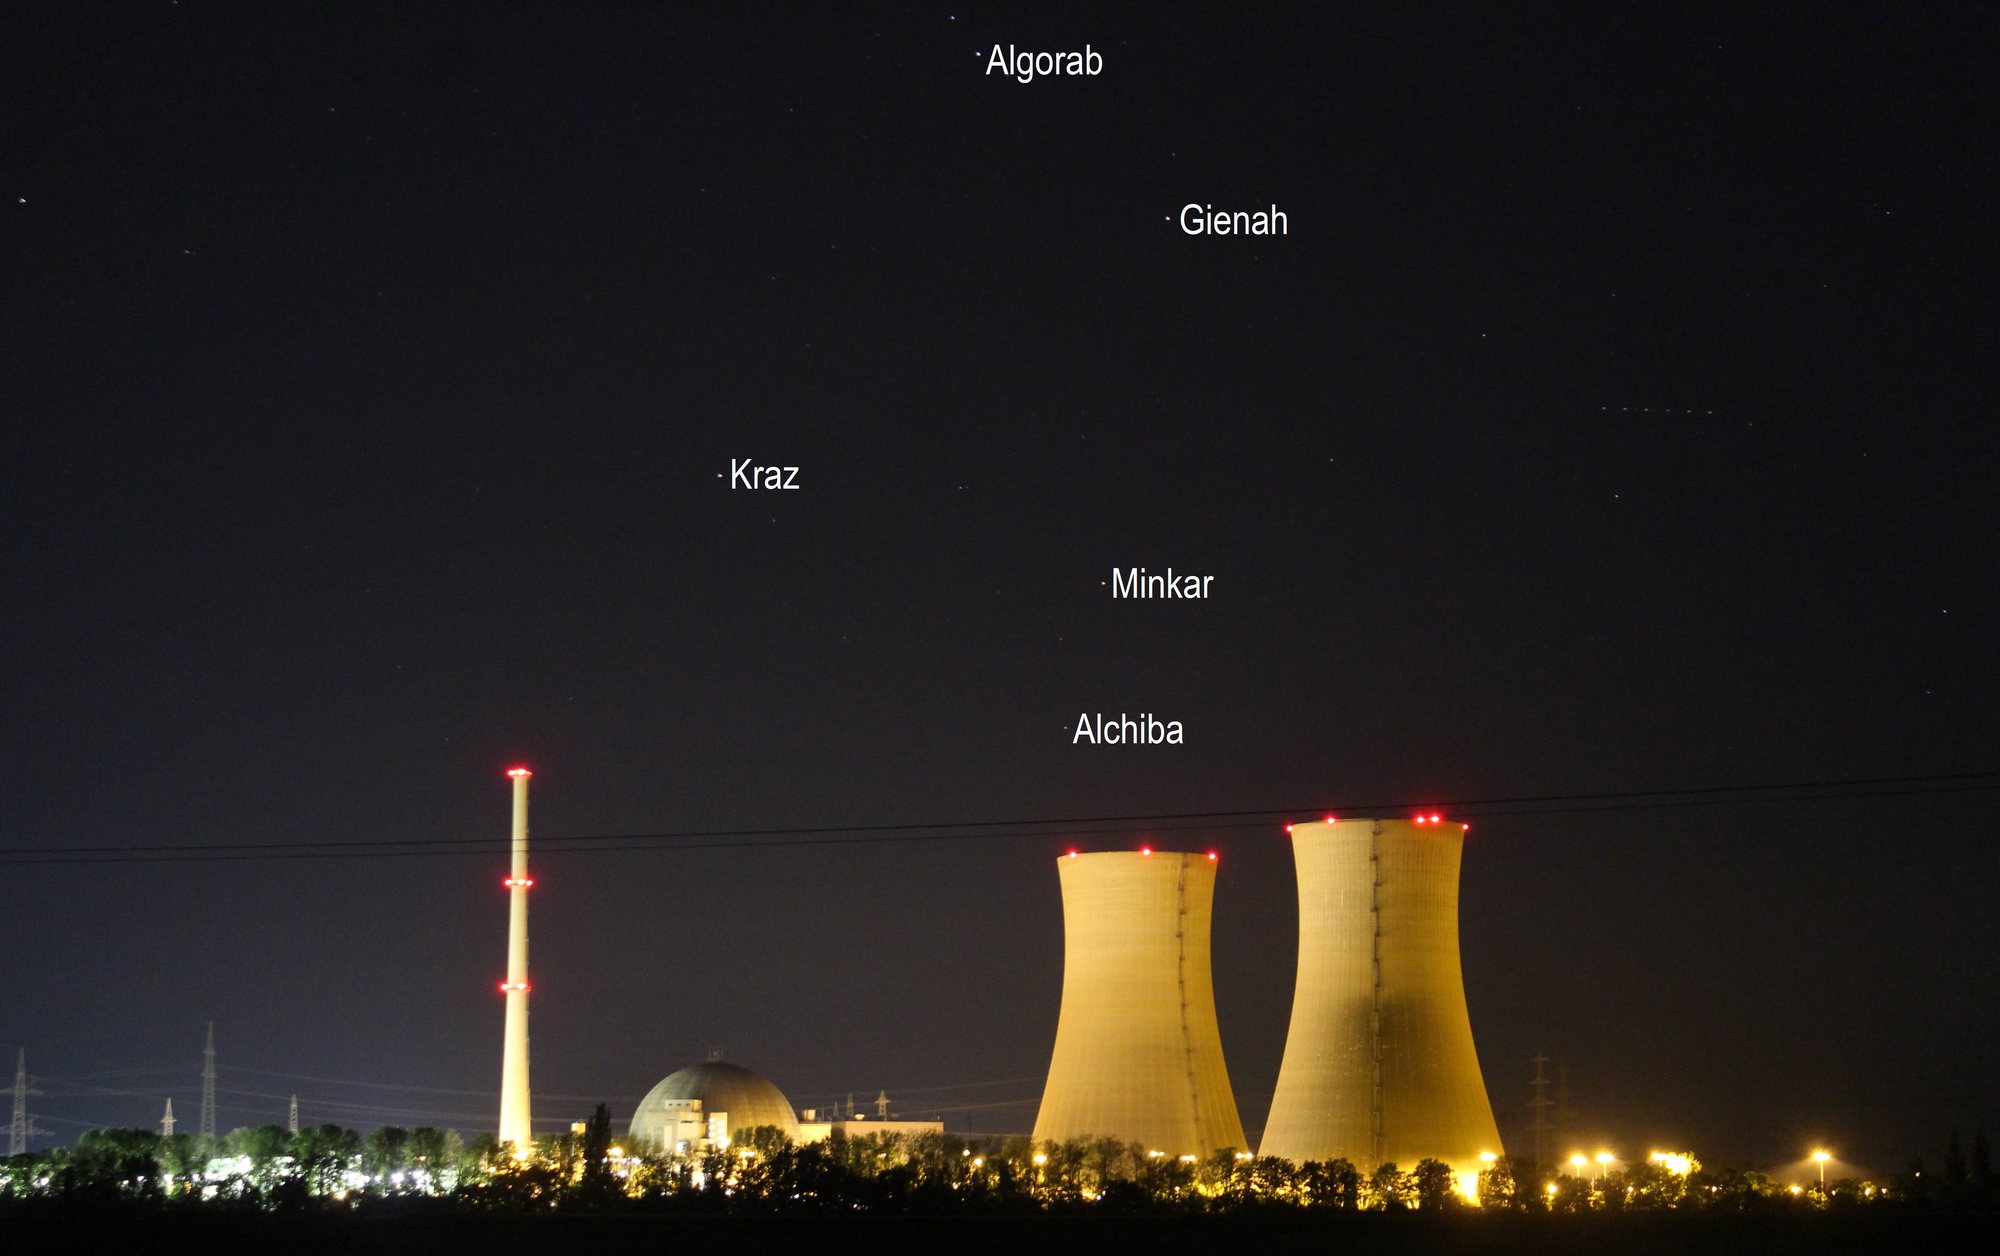 Sternbild Rabe über dem Kernkraftwerk Grafenrheinfeld (Objekte beschriftet)